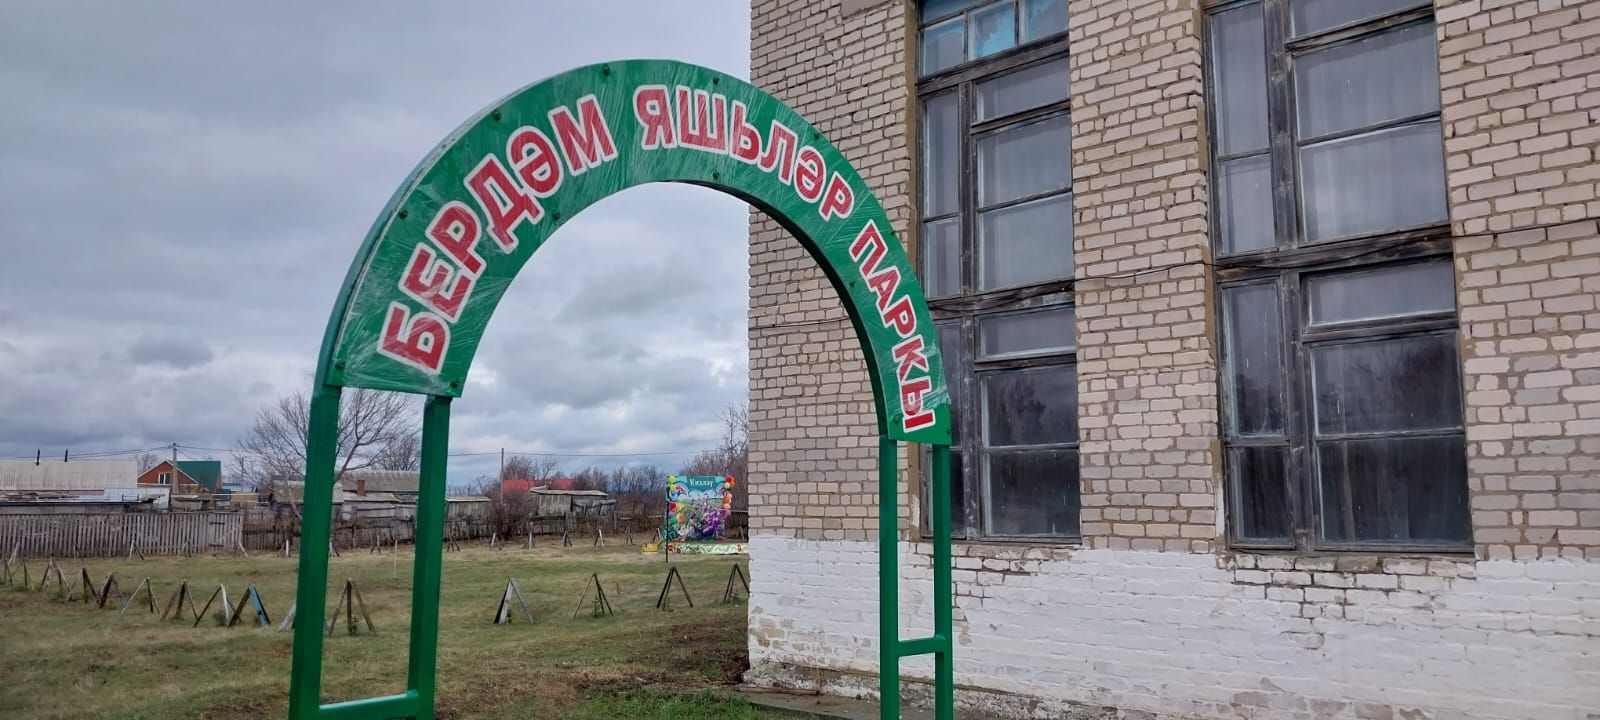 В парке села Курманаево Нурлатского района установили арочные ворота